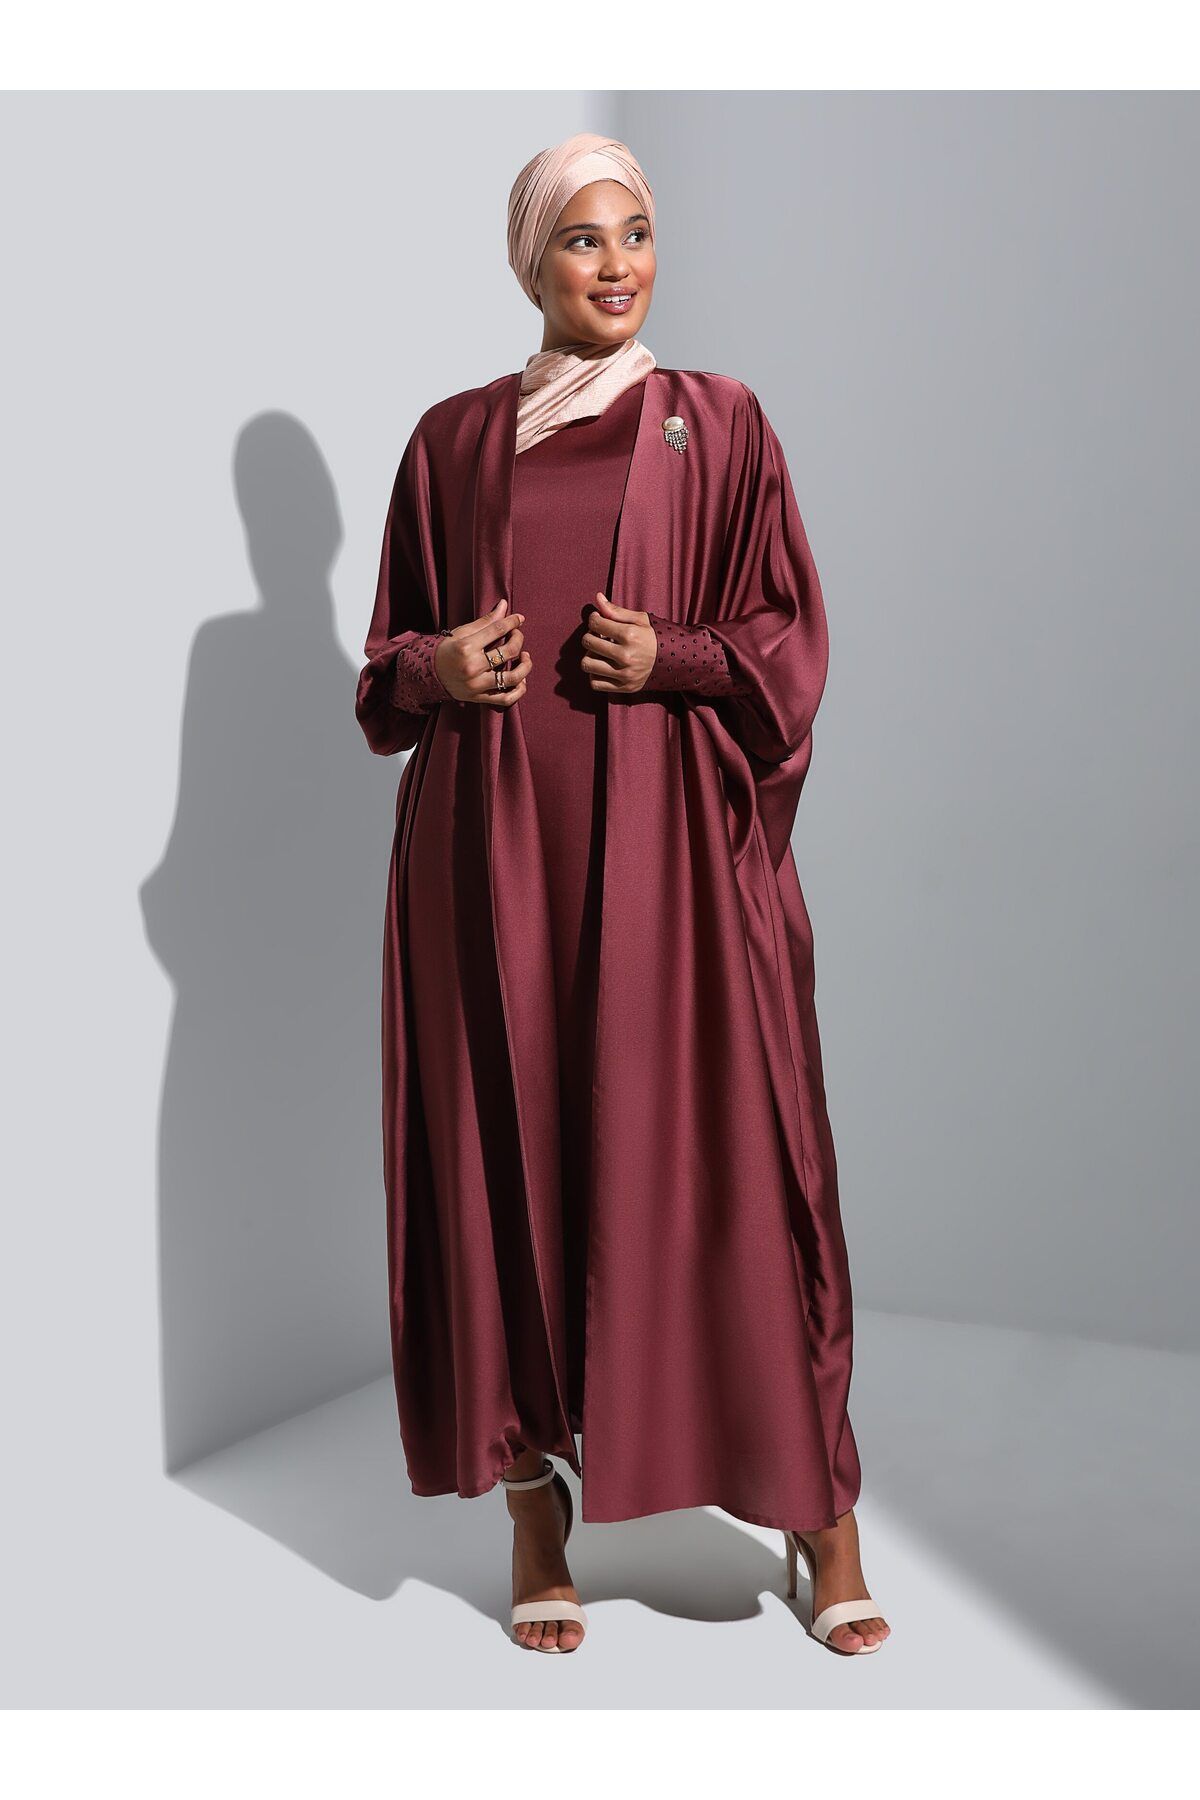 Refka Kolları Taş Detaylı Saten Elbise&Ferace İkili Abiye Takım -Koyu Visne- Refka